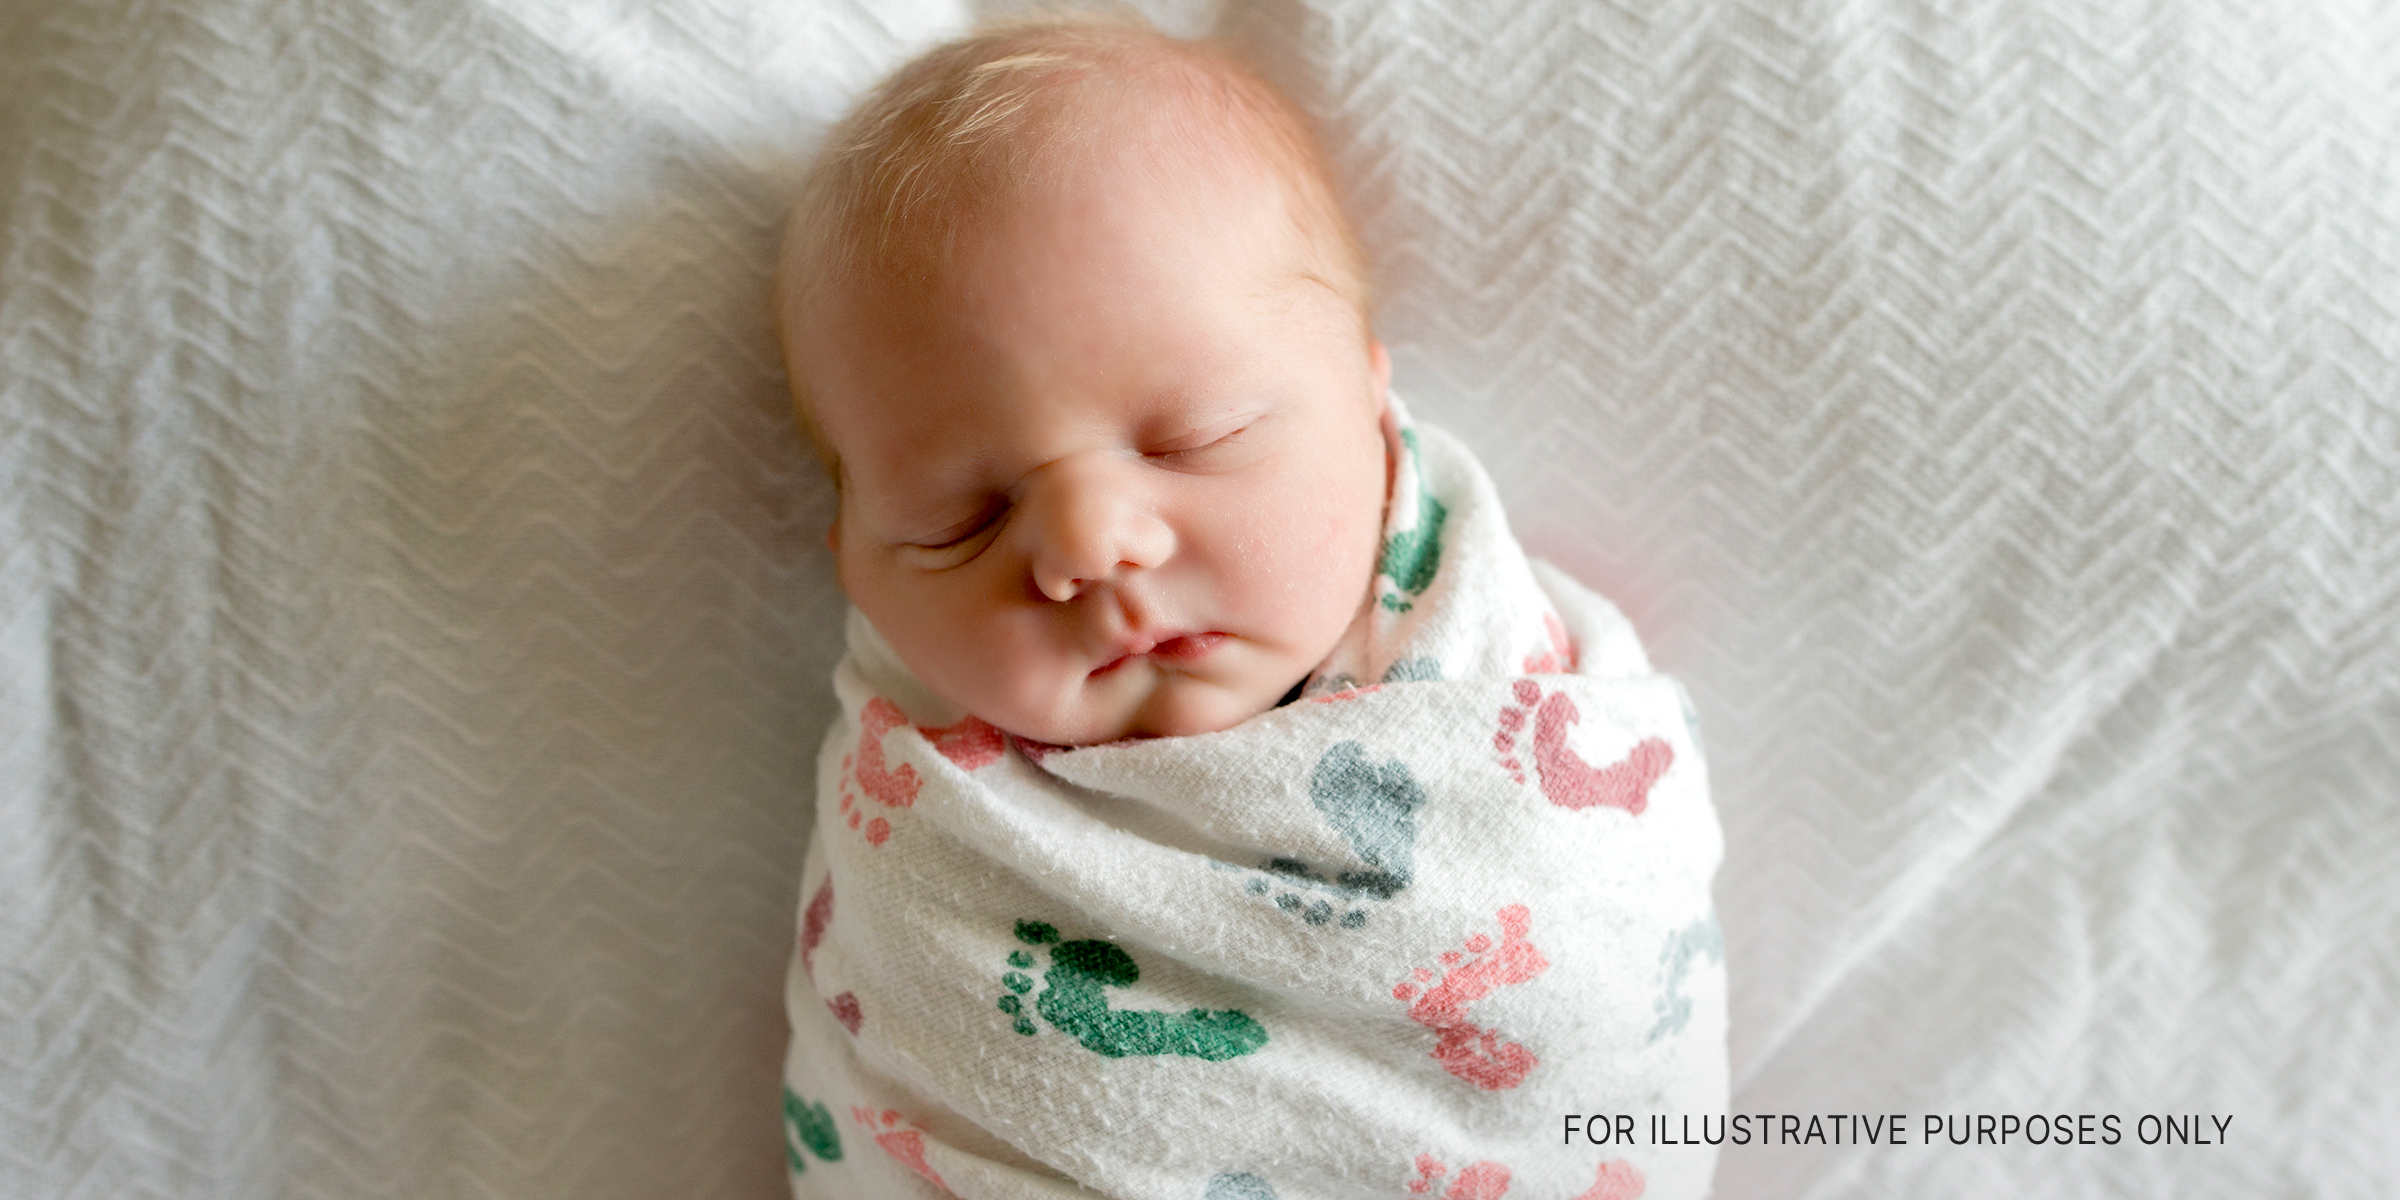 A newborn baby | Source: Shutterstock